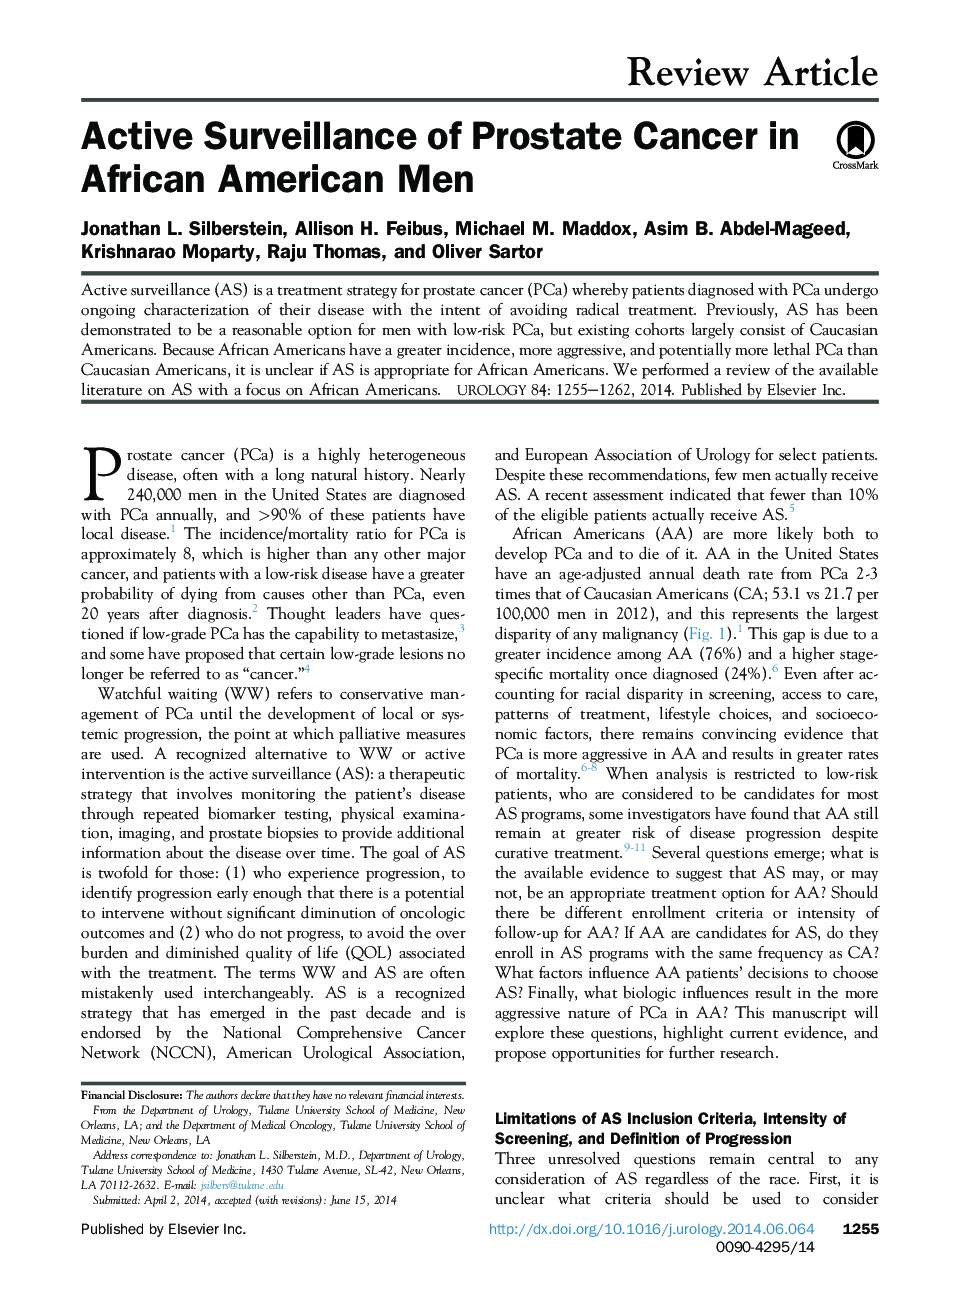 نظارت فعال سرطان پروستات در مردان آفریقایی آمریکایی 